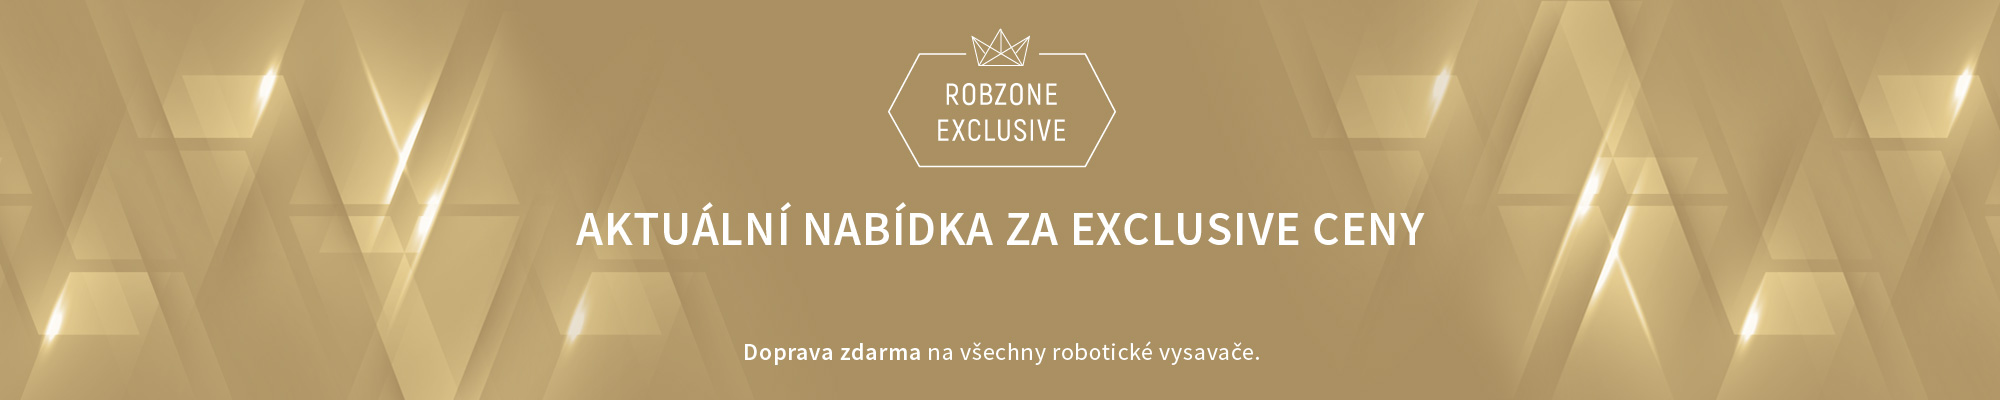  Robzone Exclusive